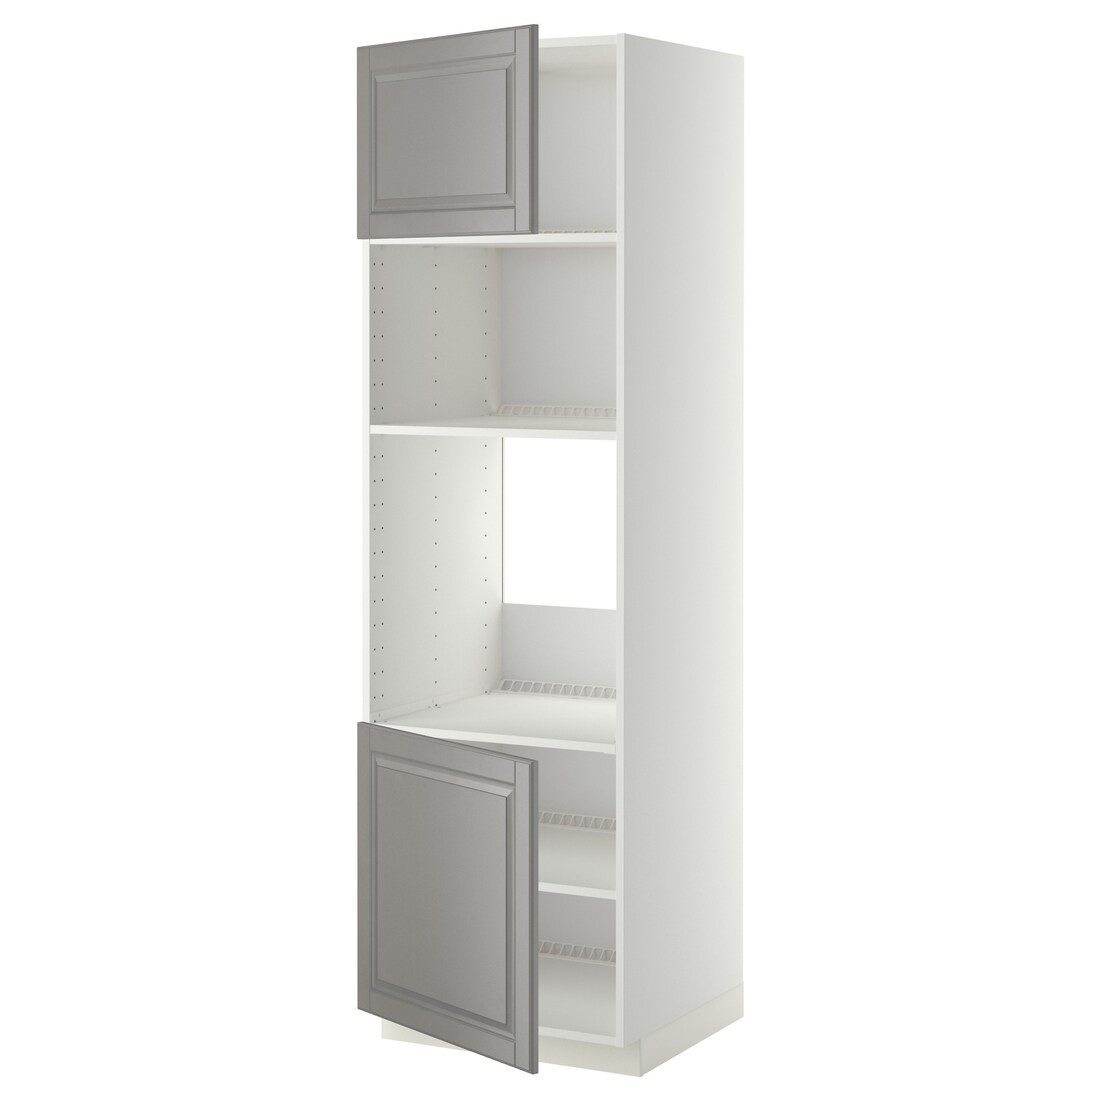 IKEA METOD МЕТОД Высокий шкаф для духовки / СВЧ, белый / Bodbyn серый, 60x60x200 см 69454545 | 694.545.45